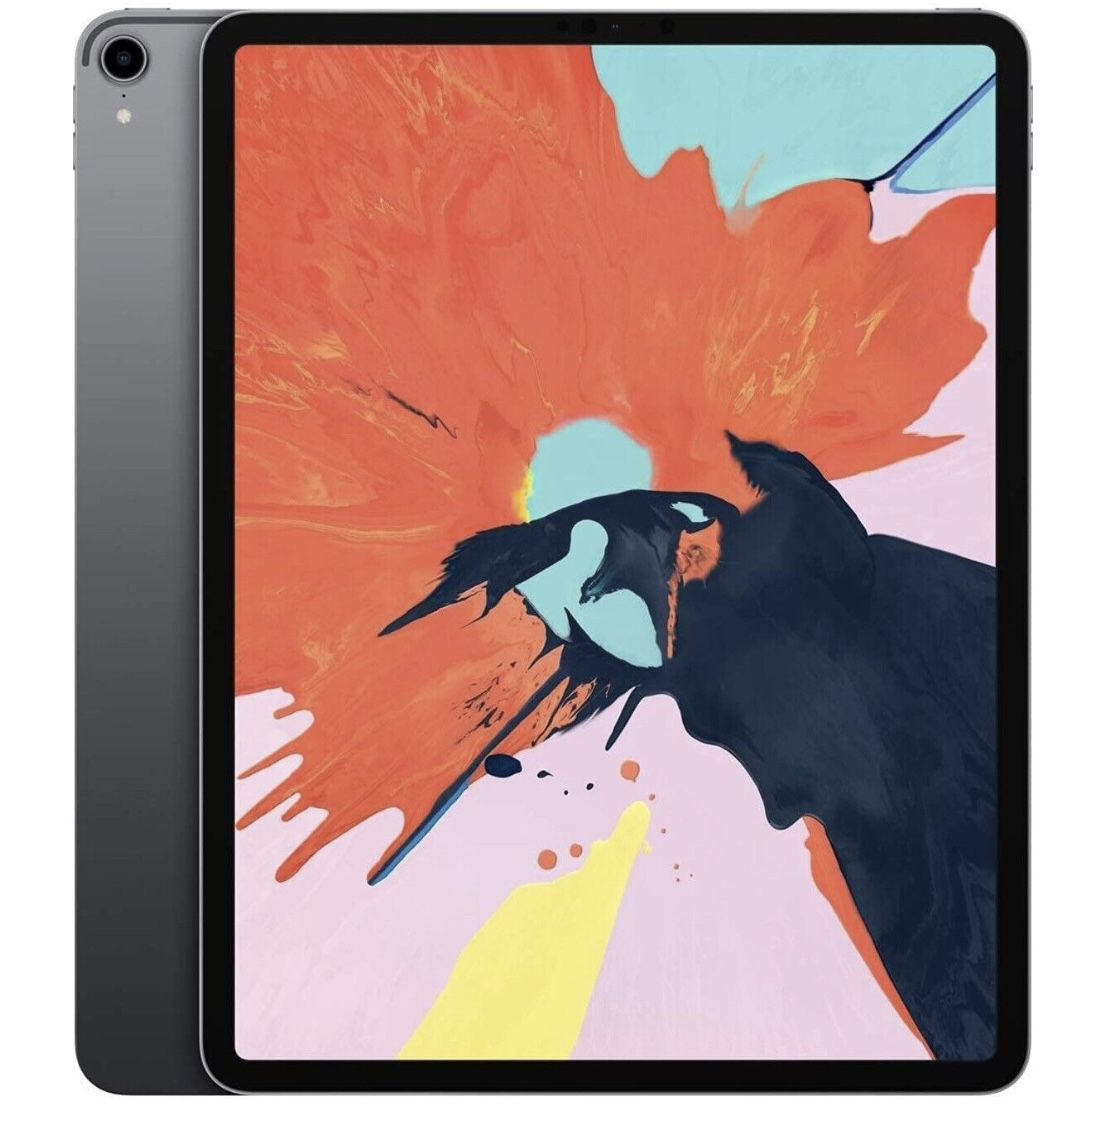 Apple iPad Pro 3 Tablet A2013 - MU0T2LL/A 64GB 11” WI-FI + CELL 